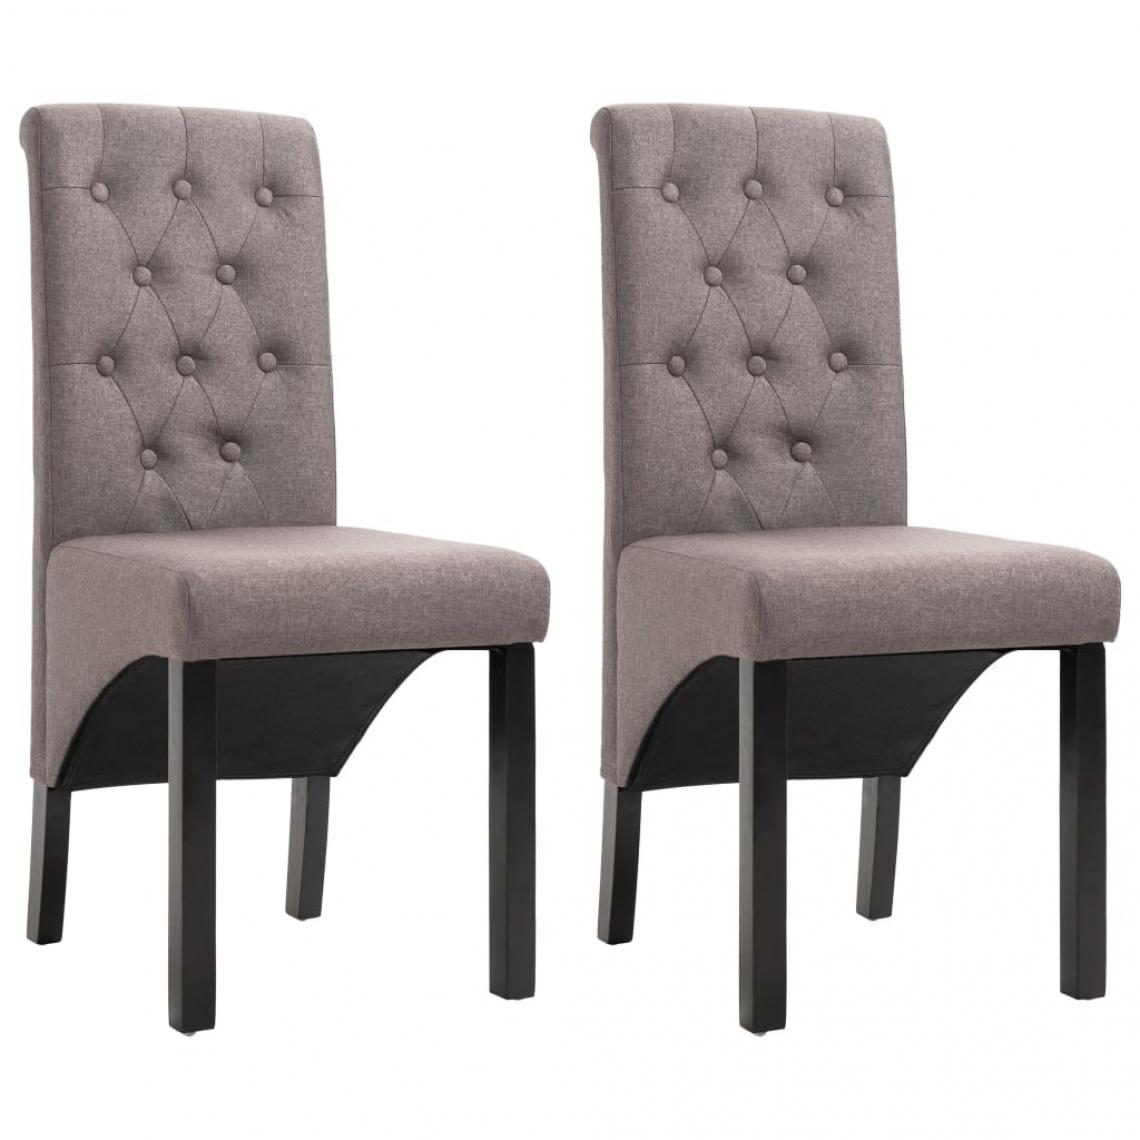 Decoshop26 - Lot de 2 chaises de salle à manger cuisine design classique tissu taupe CDS021045 - Chaises